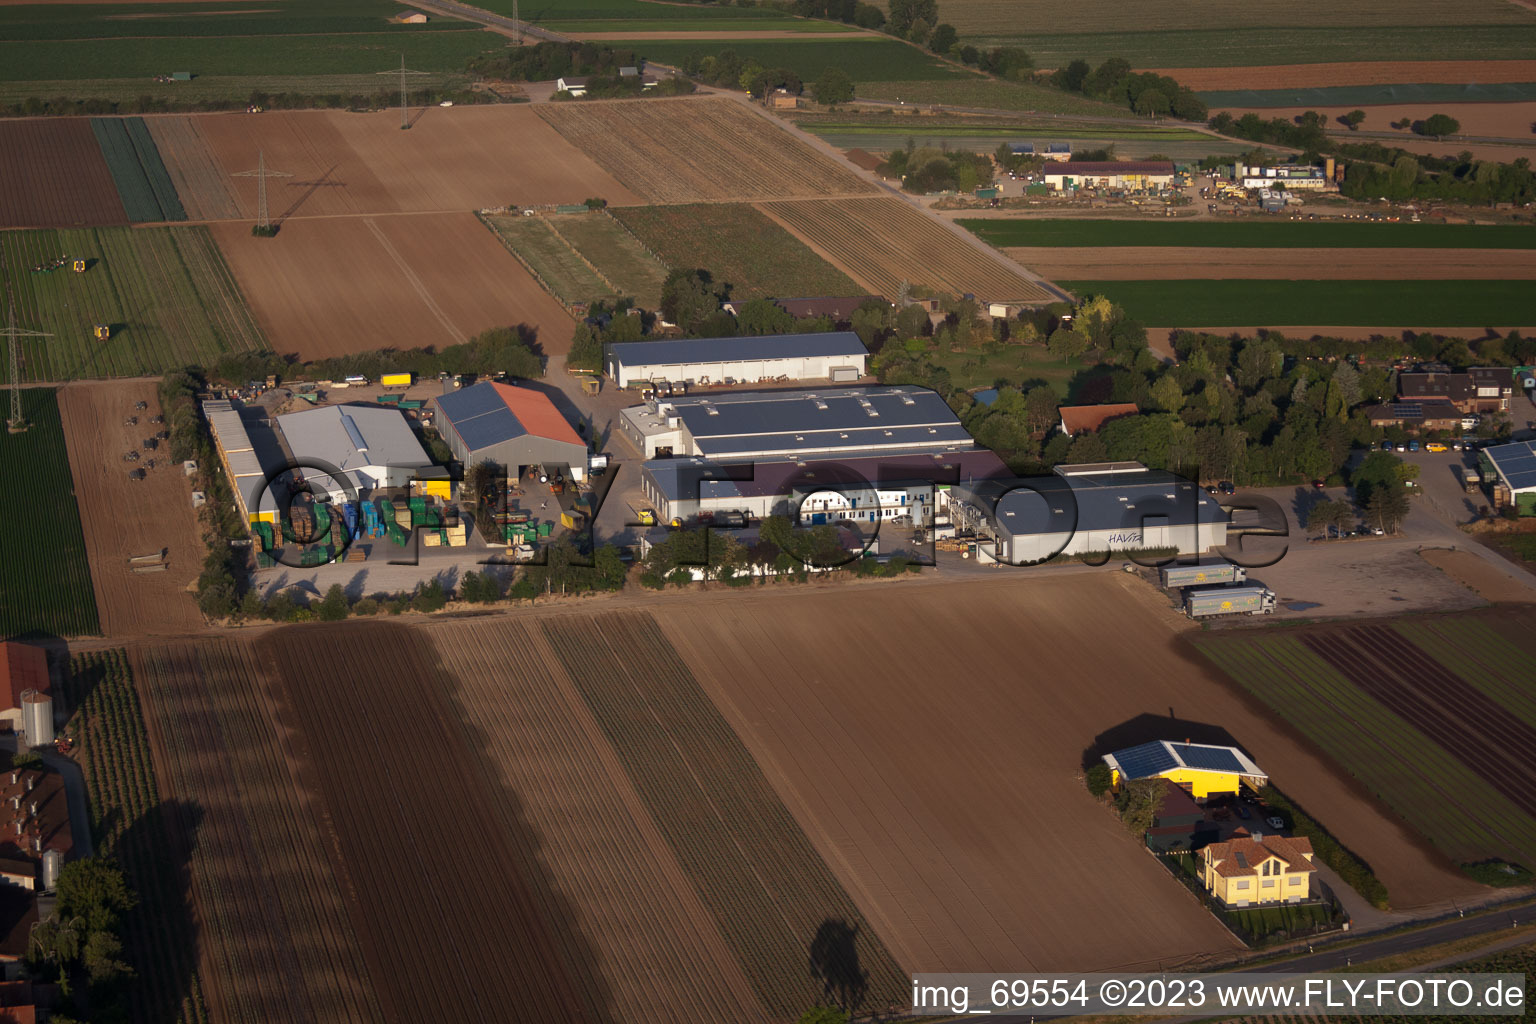 Vue aérienne de Salades fraîches Havita à le quartier Dannstadt in Dannstadt-Schauernheim dans le département Rhénanie-Palatinat, Allemagne